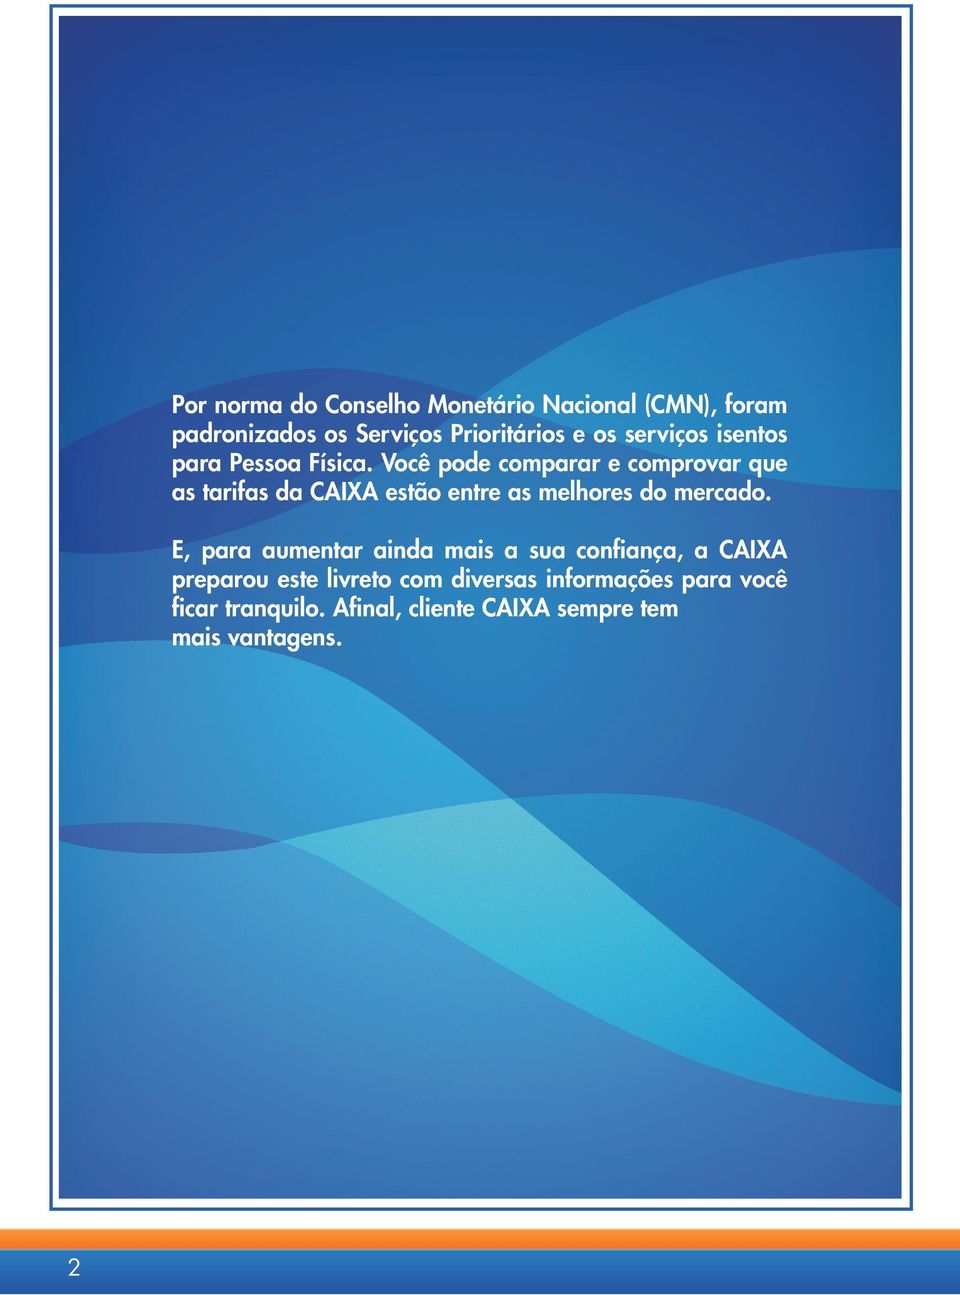 Você pode comparar e comprovar que as tarifas da CAIXA estão entre as melhores do mercado.